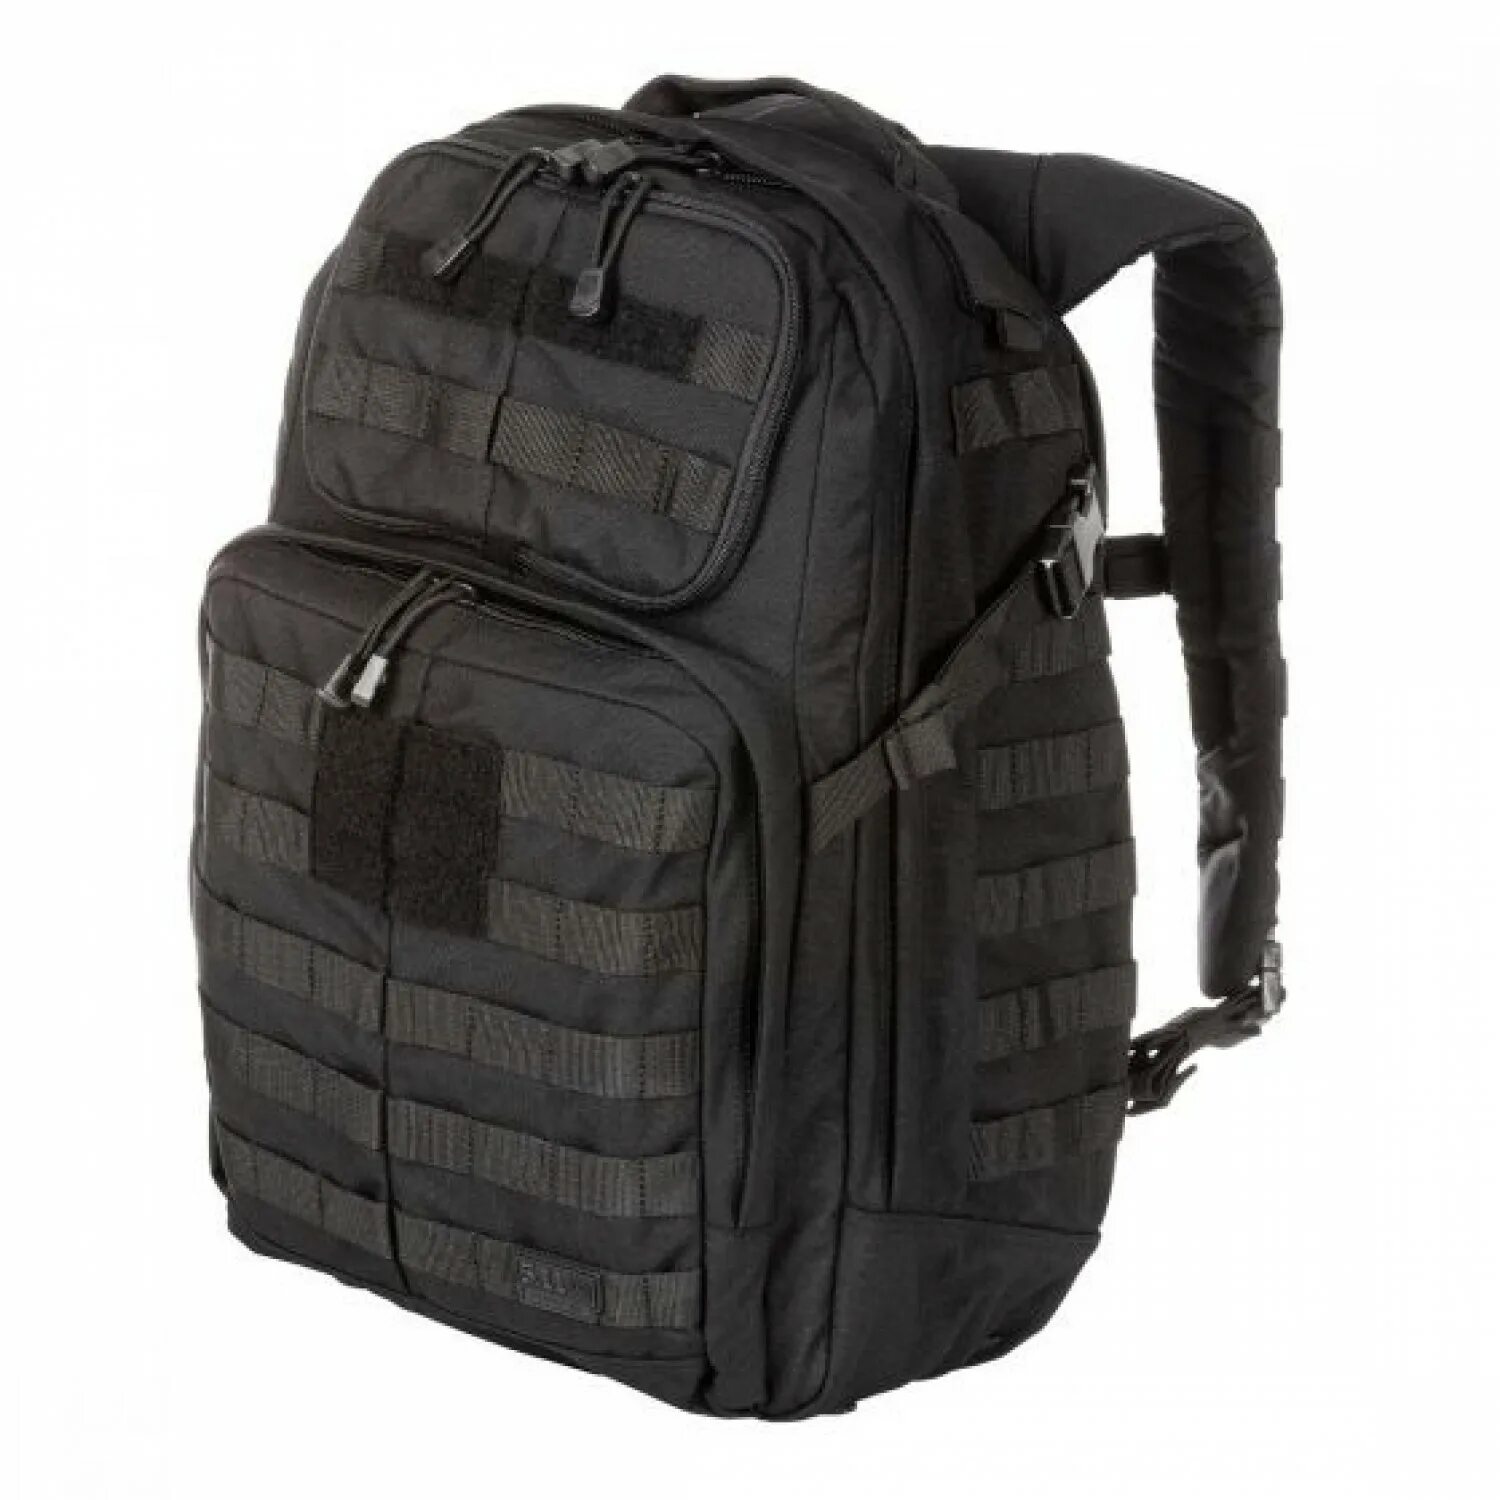 Лубяной рюкзак 5. Rush 24 Backpack 5.11 Tactical. Тактический рюкзак 5.11 Rush. 5.11 Tactical Rush 24. Тактический рюкзак 5.11 Tactical.